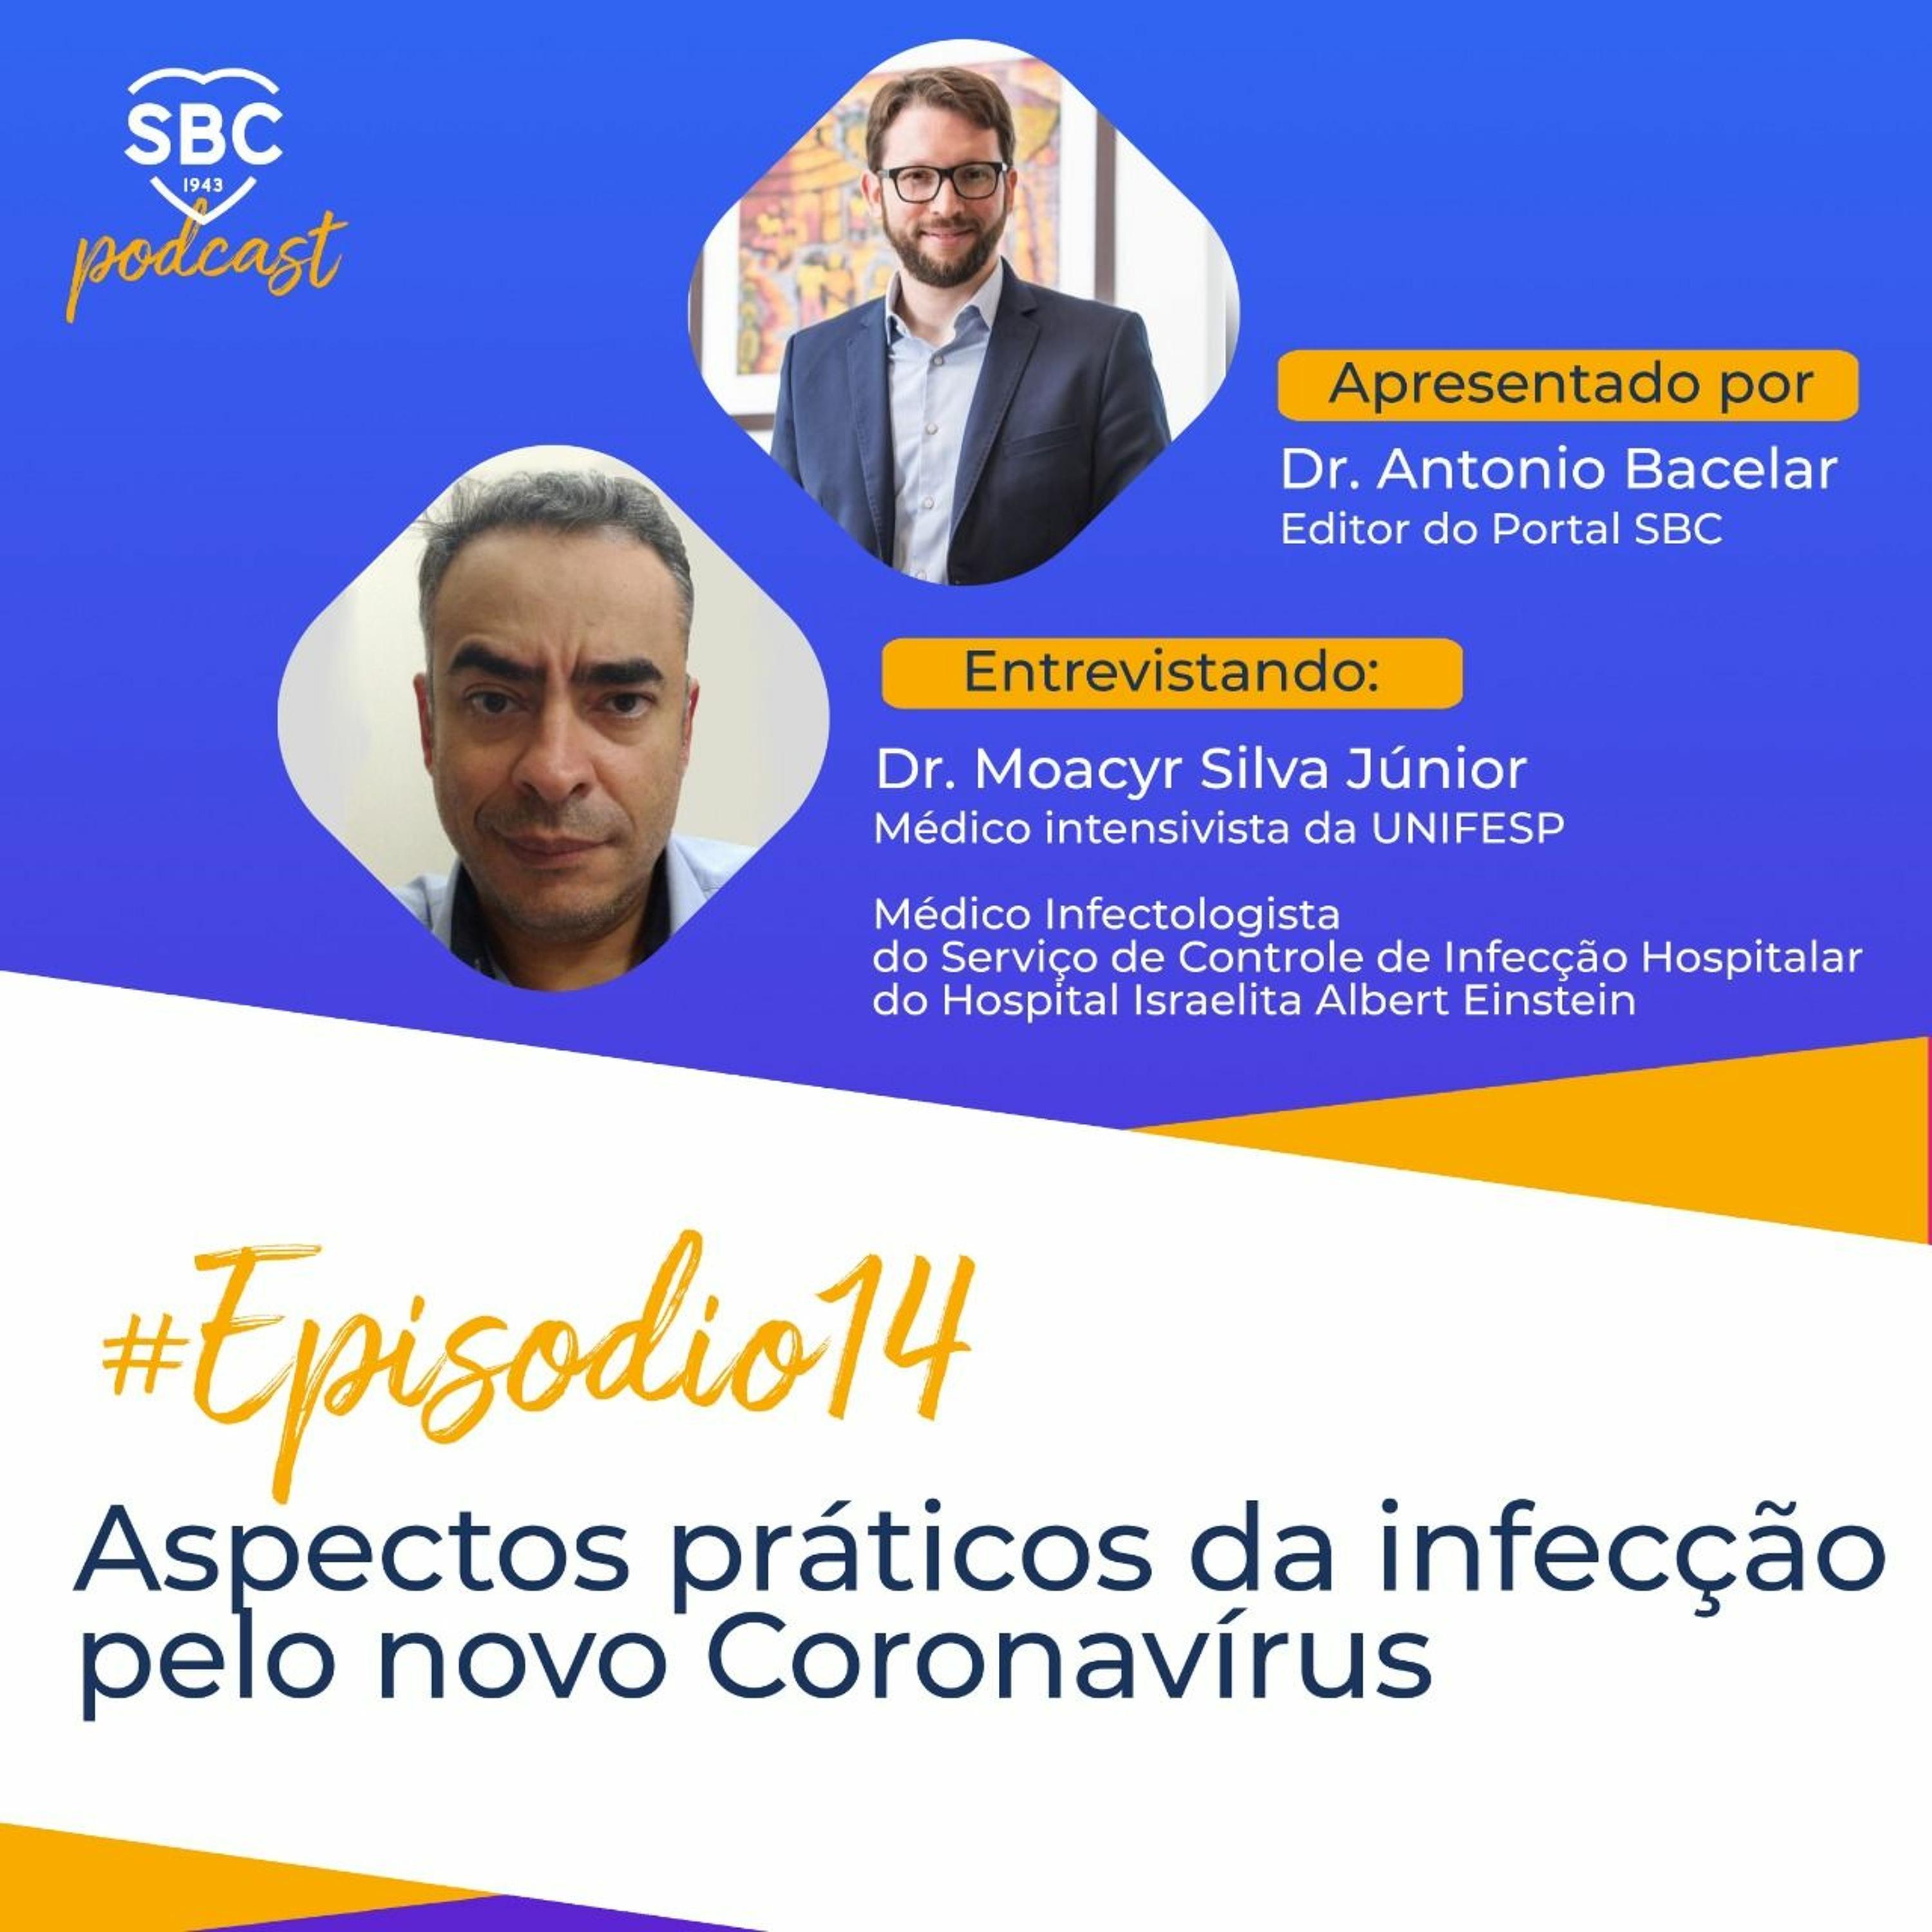 Neste episódio, o Dr Antonio Bacelar e o Dr Moacyr Silva Júnior abordam os aspectos práticos e discutem os fatos e mitos relacionados a infecção pelo novo Coronavírus.